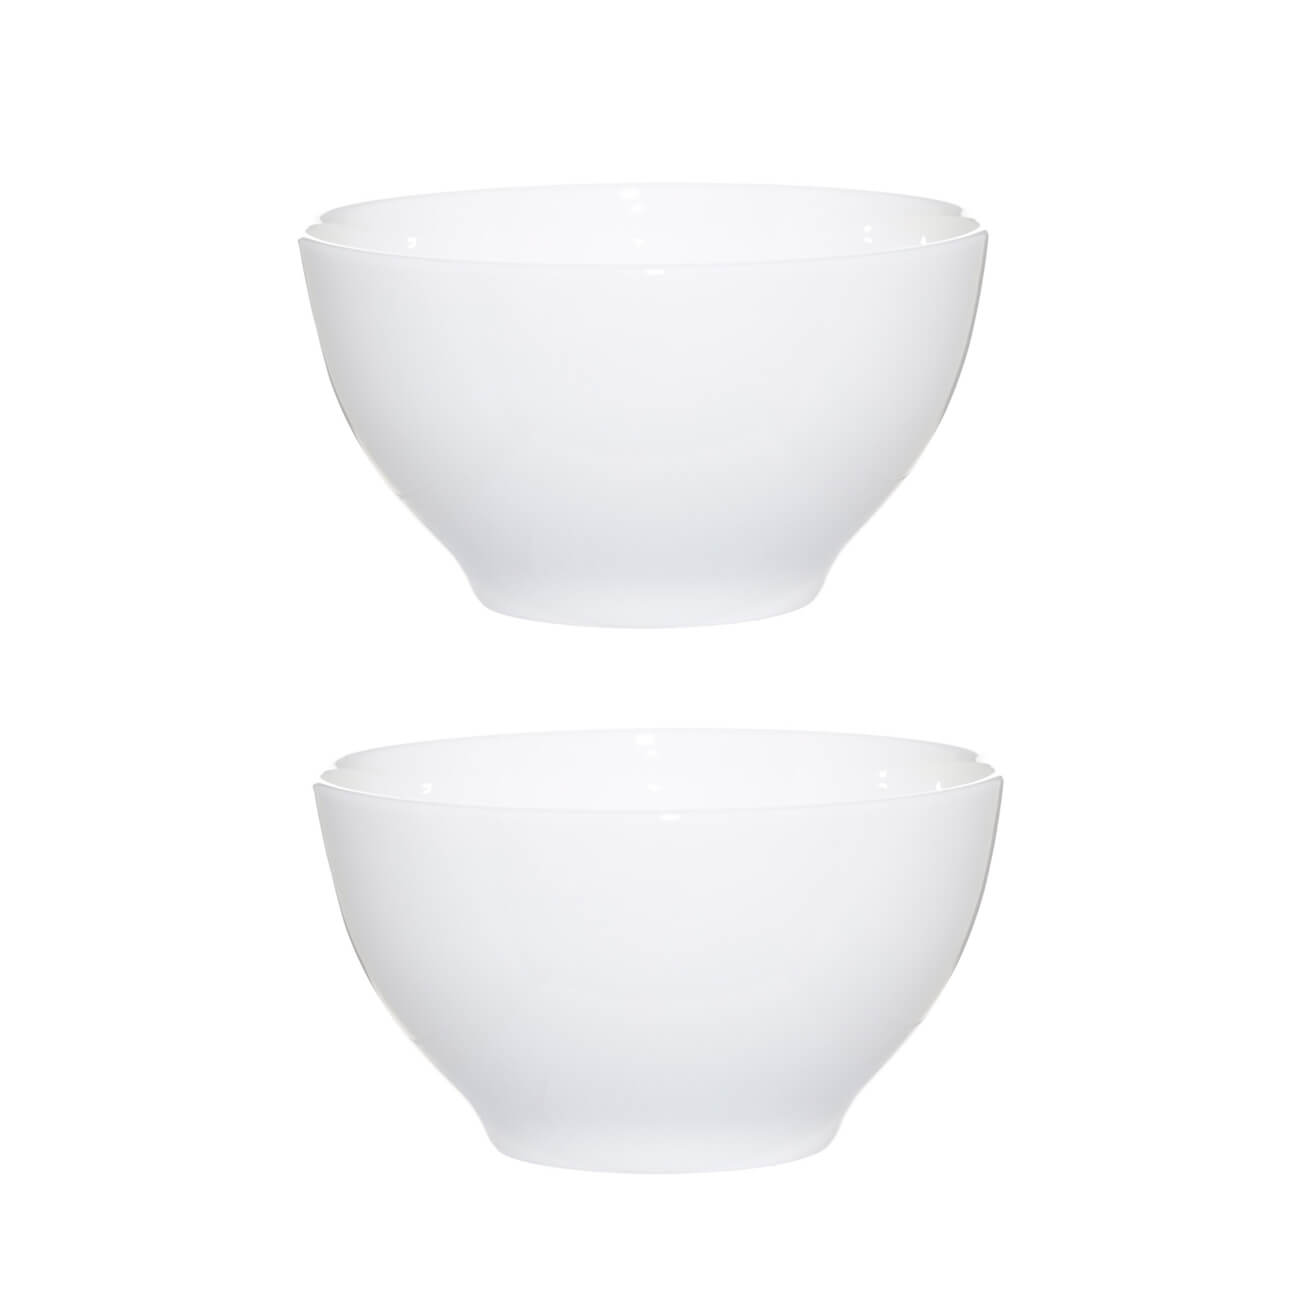 Bowl, 12x6 cm, 2 pieces, porcelain F, white, Ideal white изображение № 1